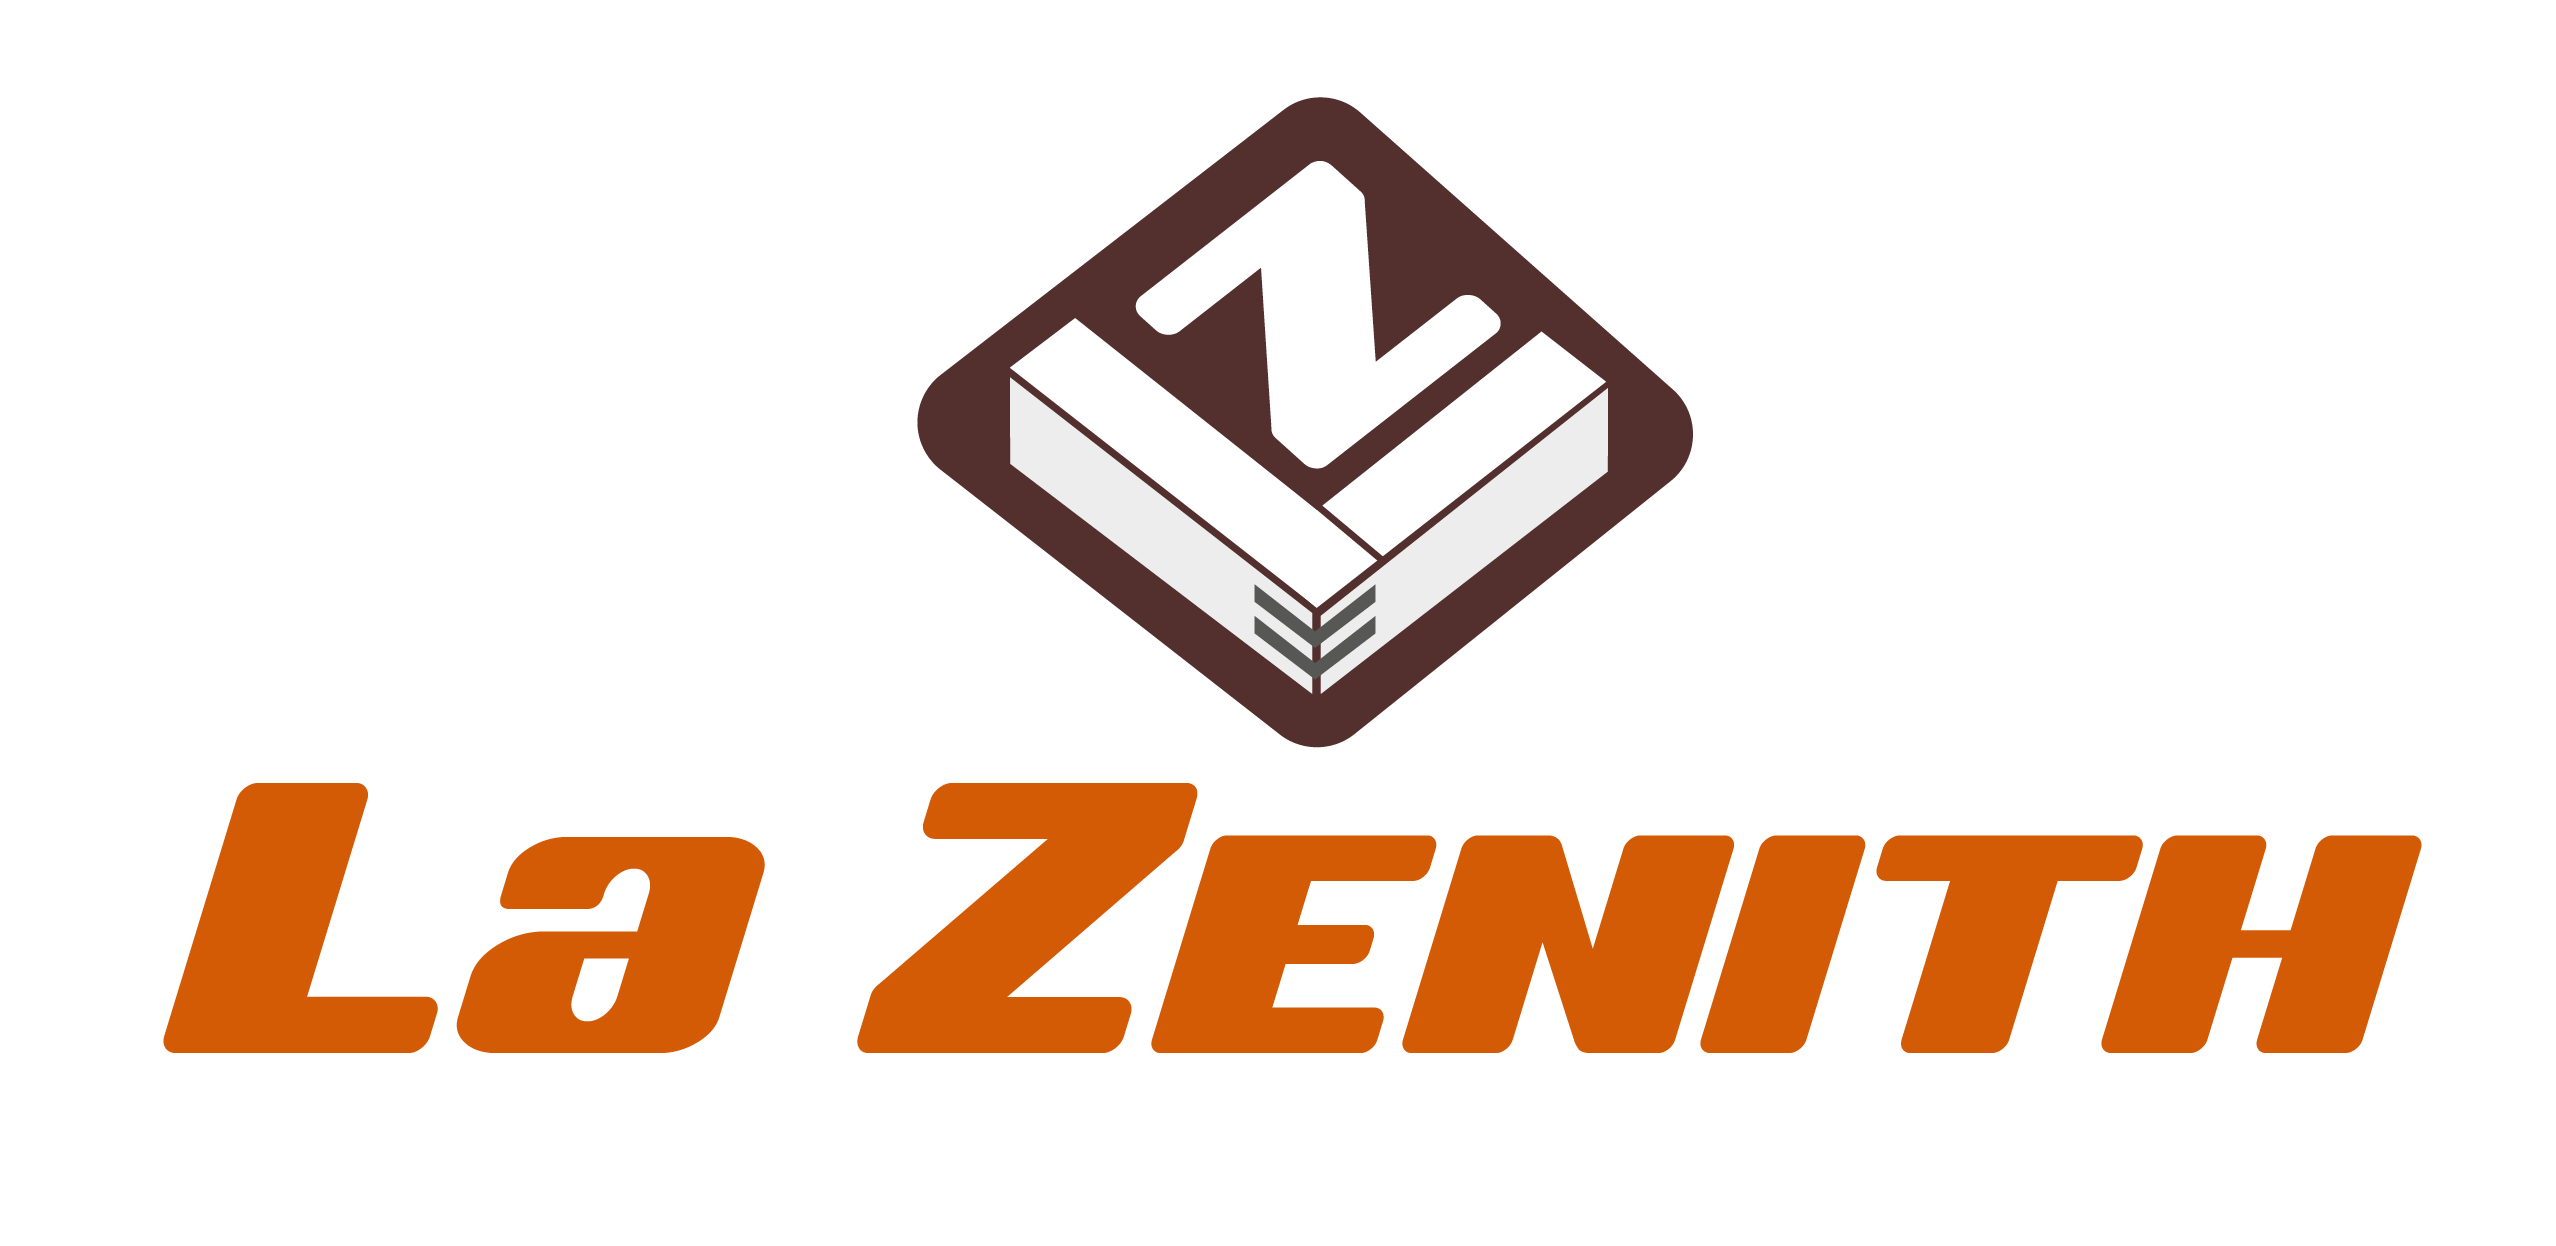 La Zenith Serramenti